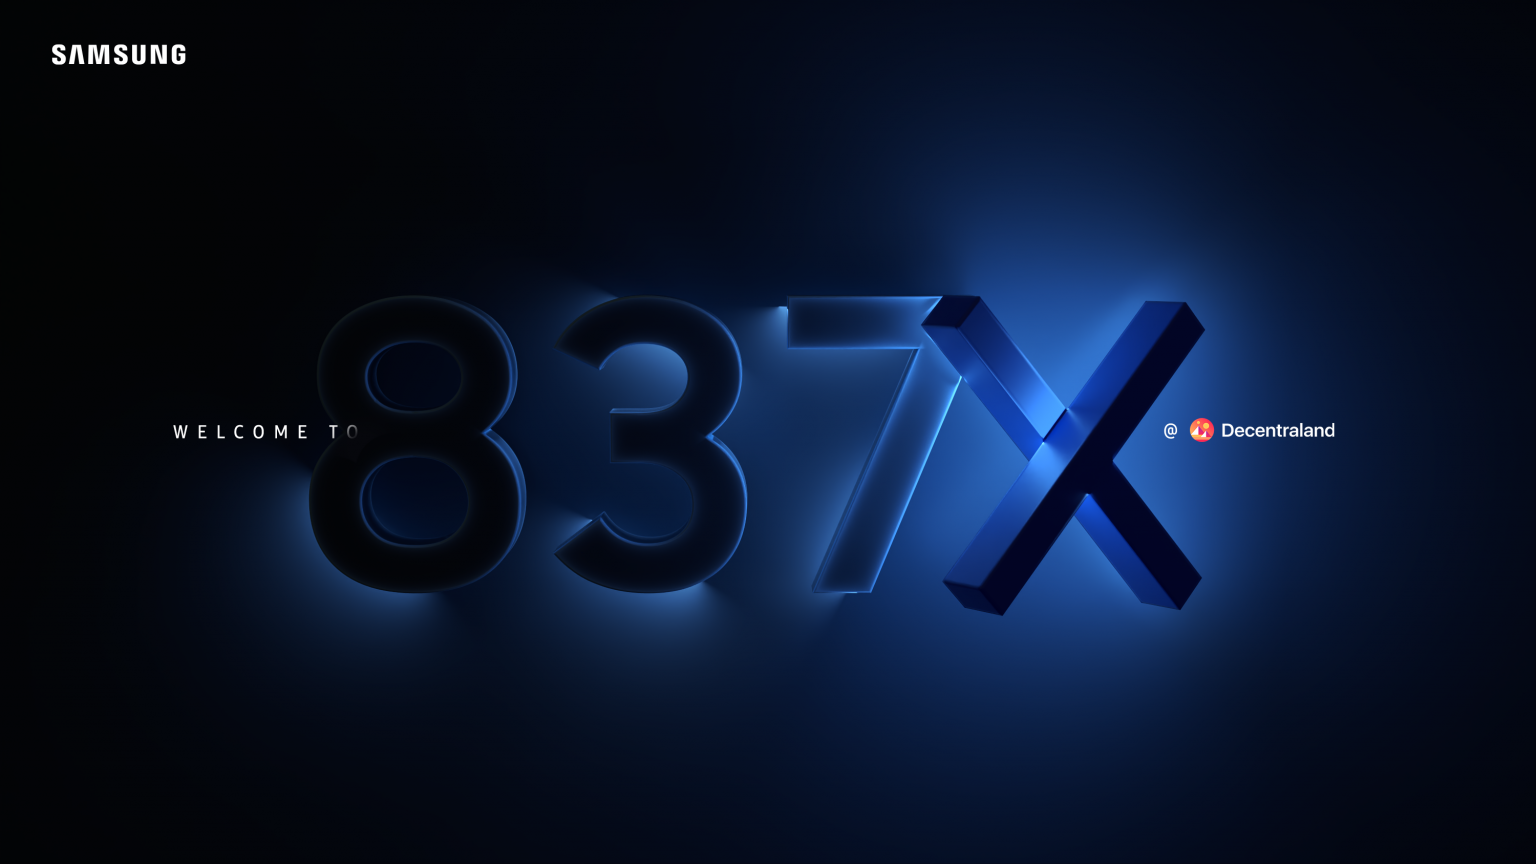 Samsung presenta una nueva experiencia para los fanáticos del metaverso con Samsung 837X